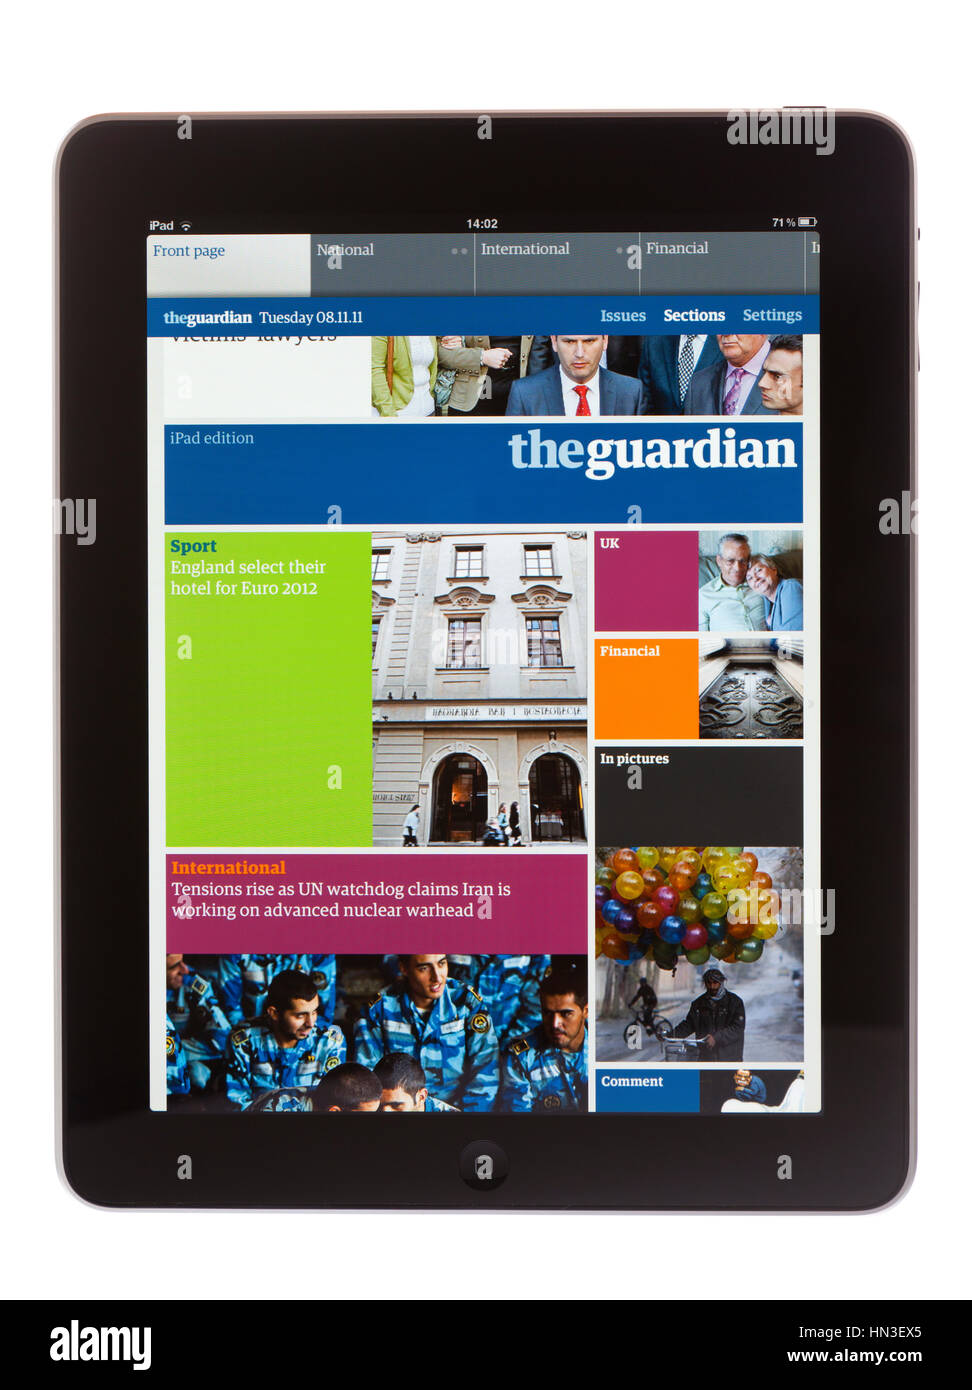 BATH, Regno Unito - 8 Novembre 2011: Un Apple iPad la visualizzazione di iPad edizione del quotidiano Guardian contro uno sfondo bianco. Il giornale può essere rivolto verso il basso Foto Stock